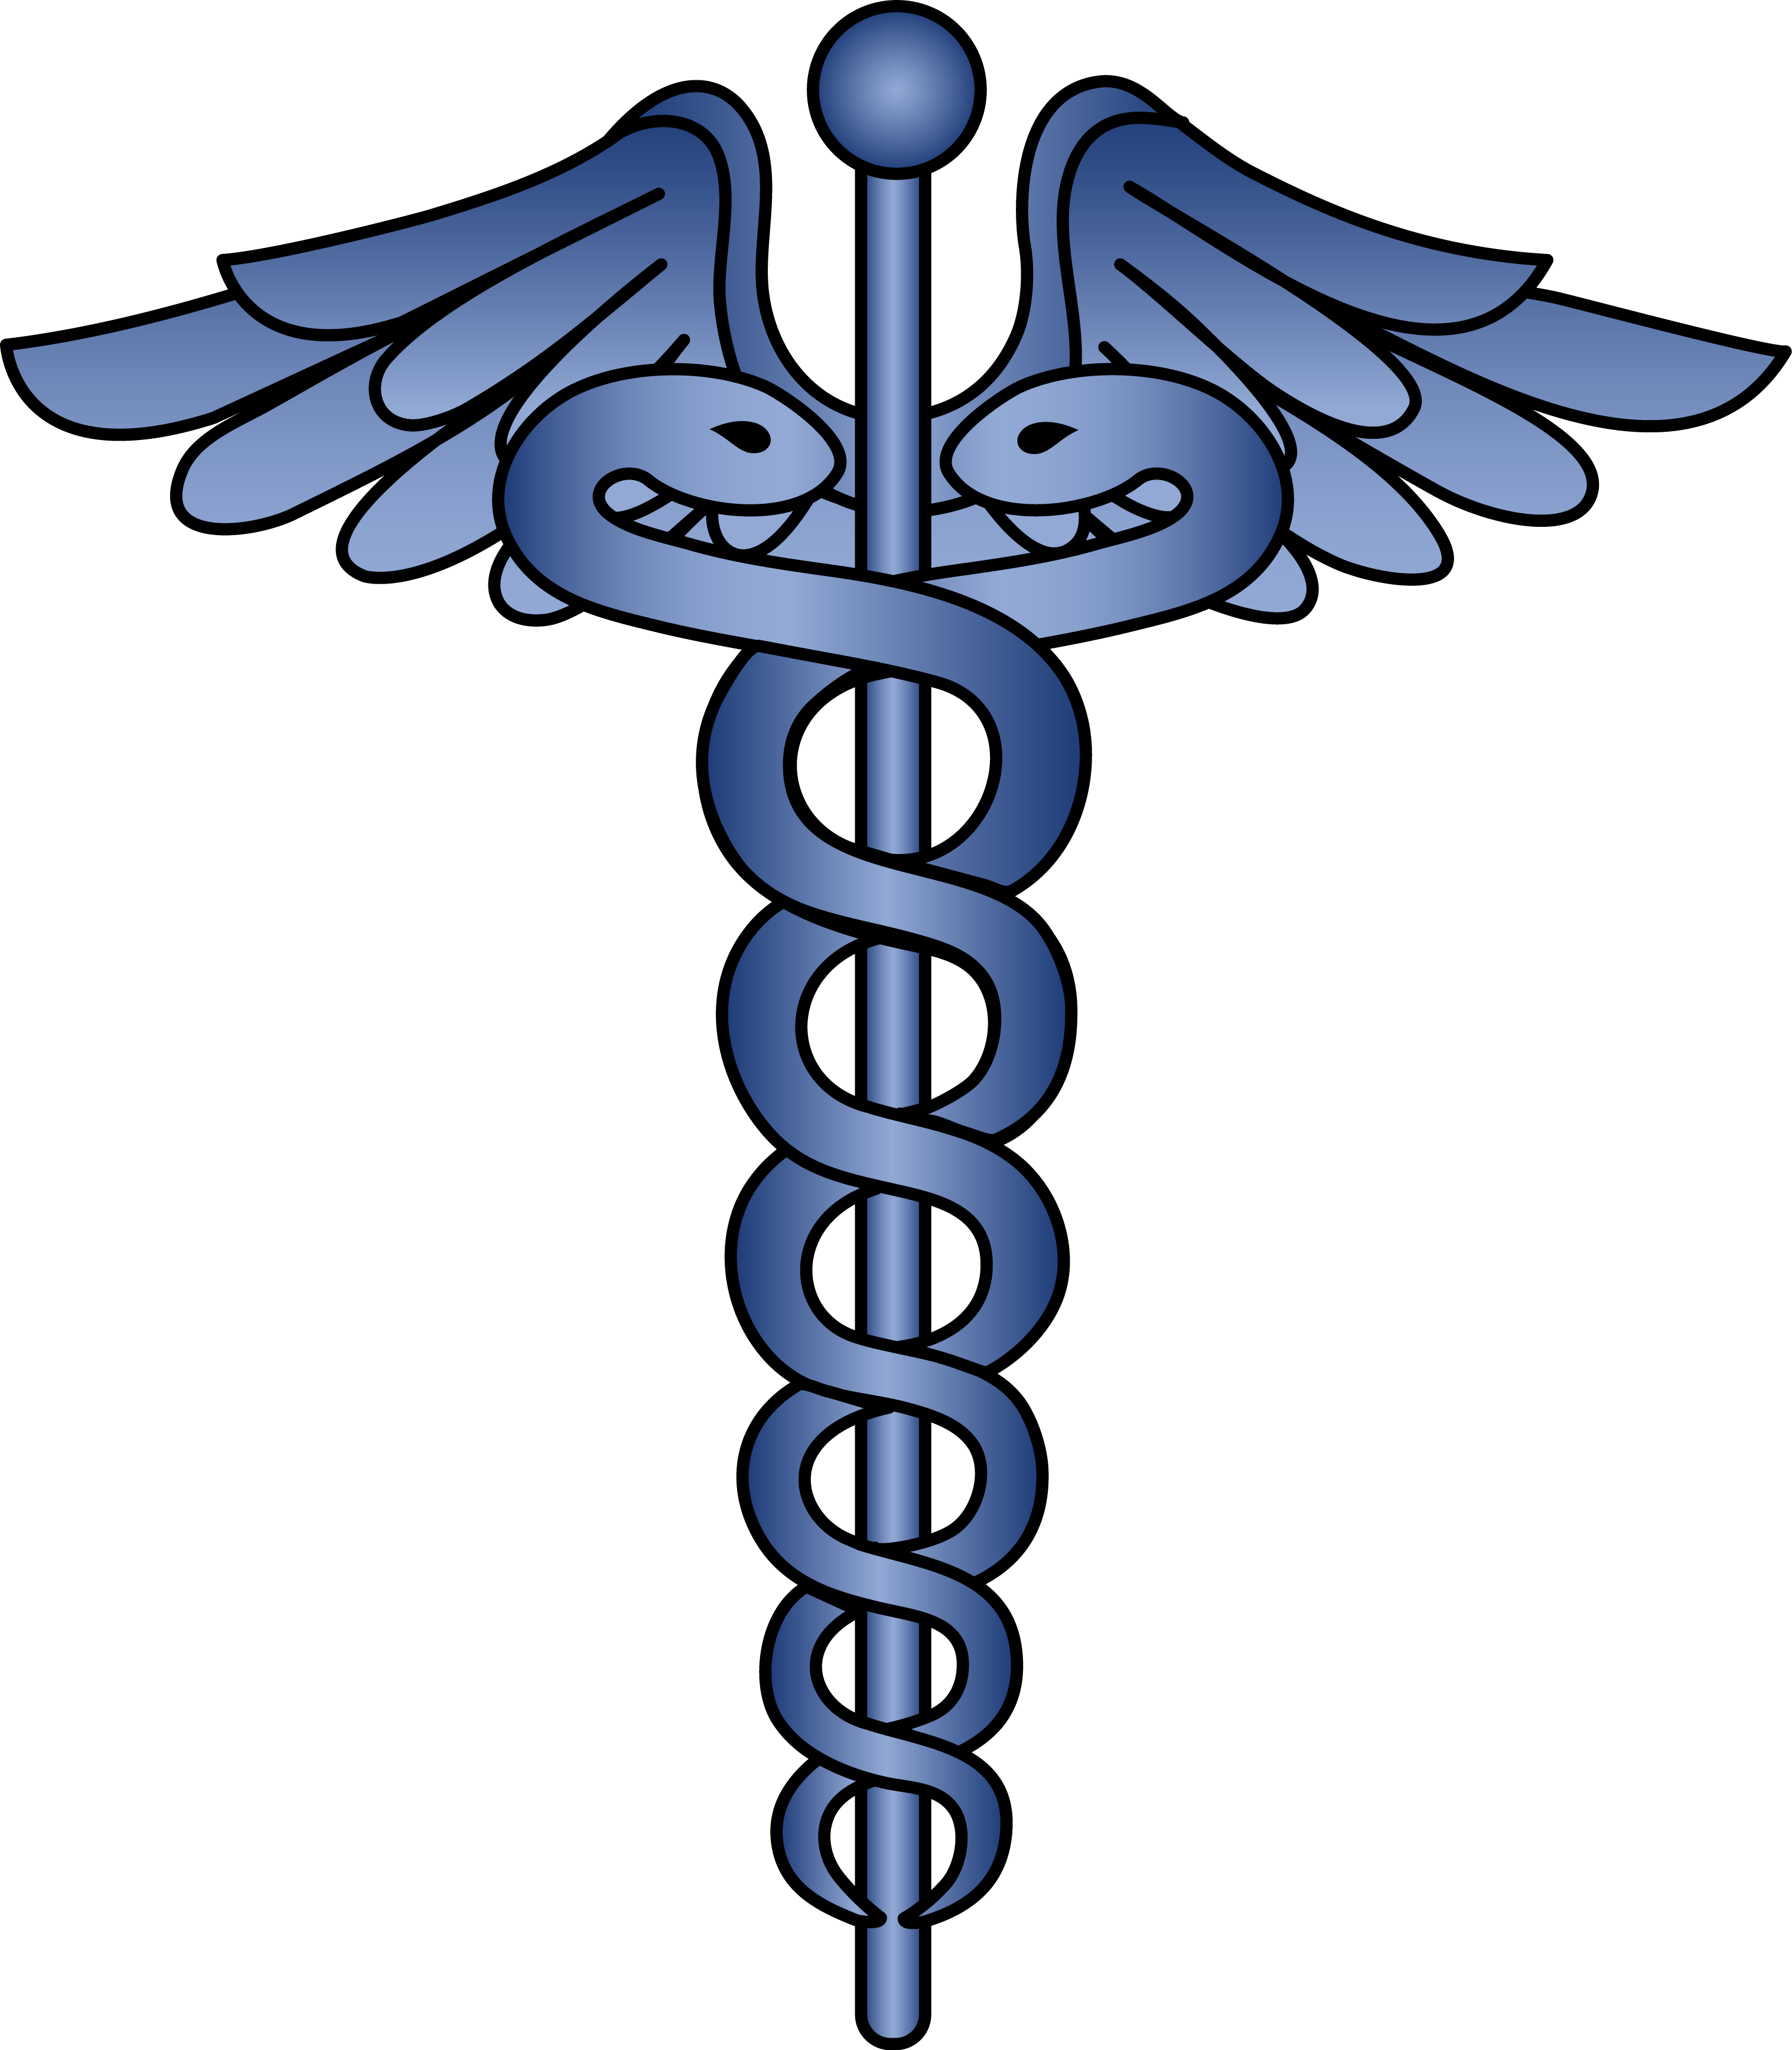 Health Symbols Clip Art